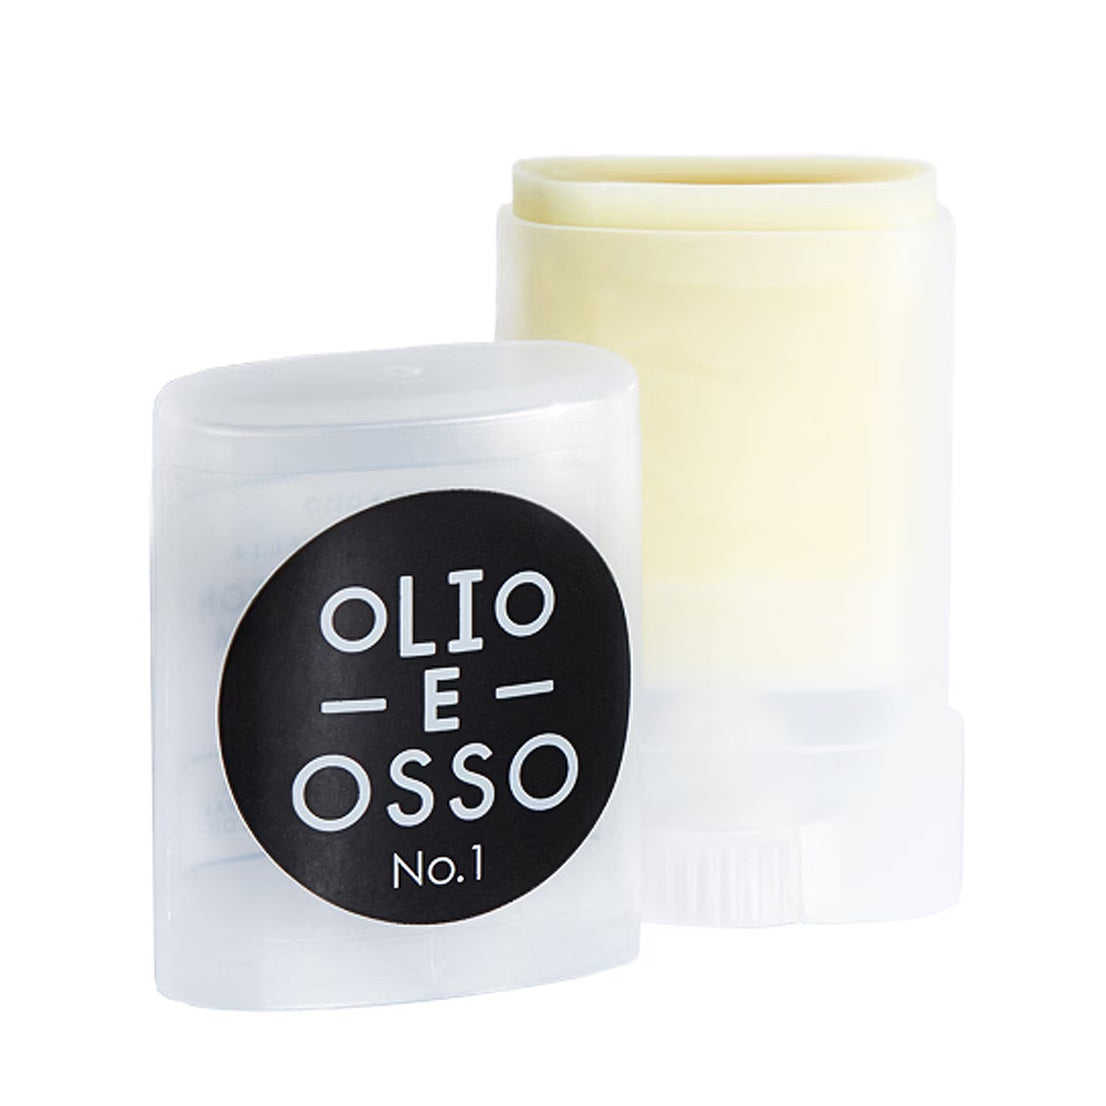 Olio E Osso Lip and Cheek Balm 10g - 1 Clear